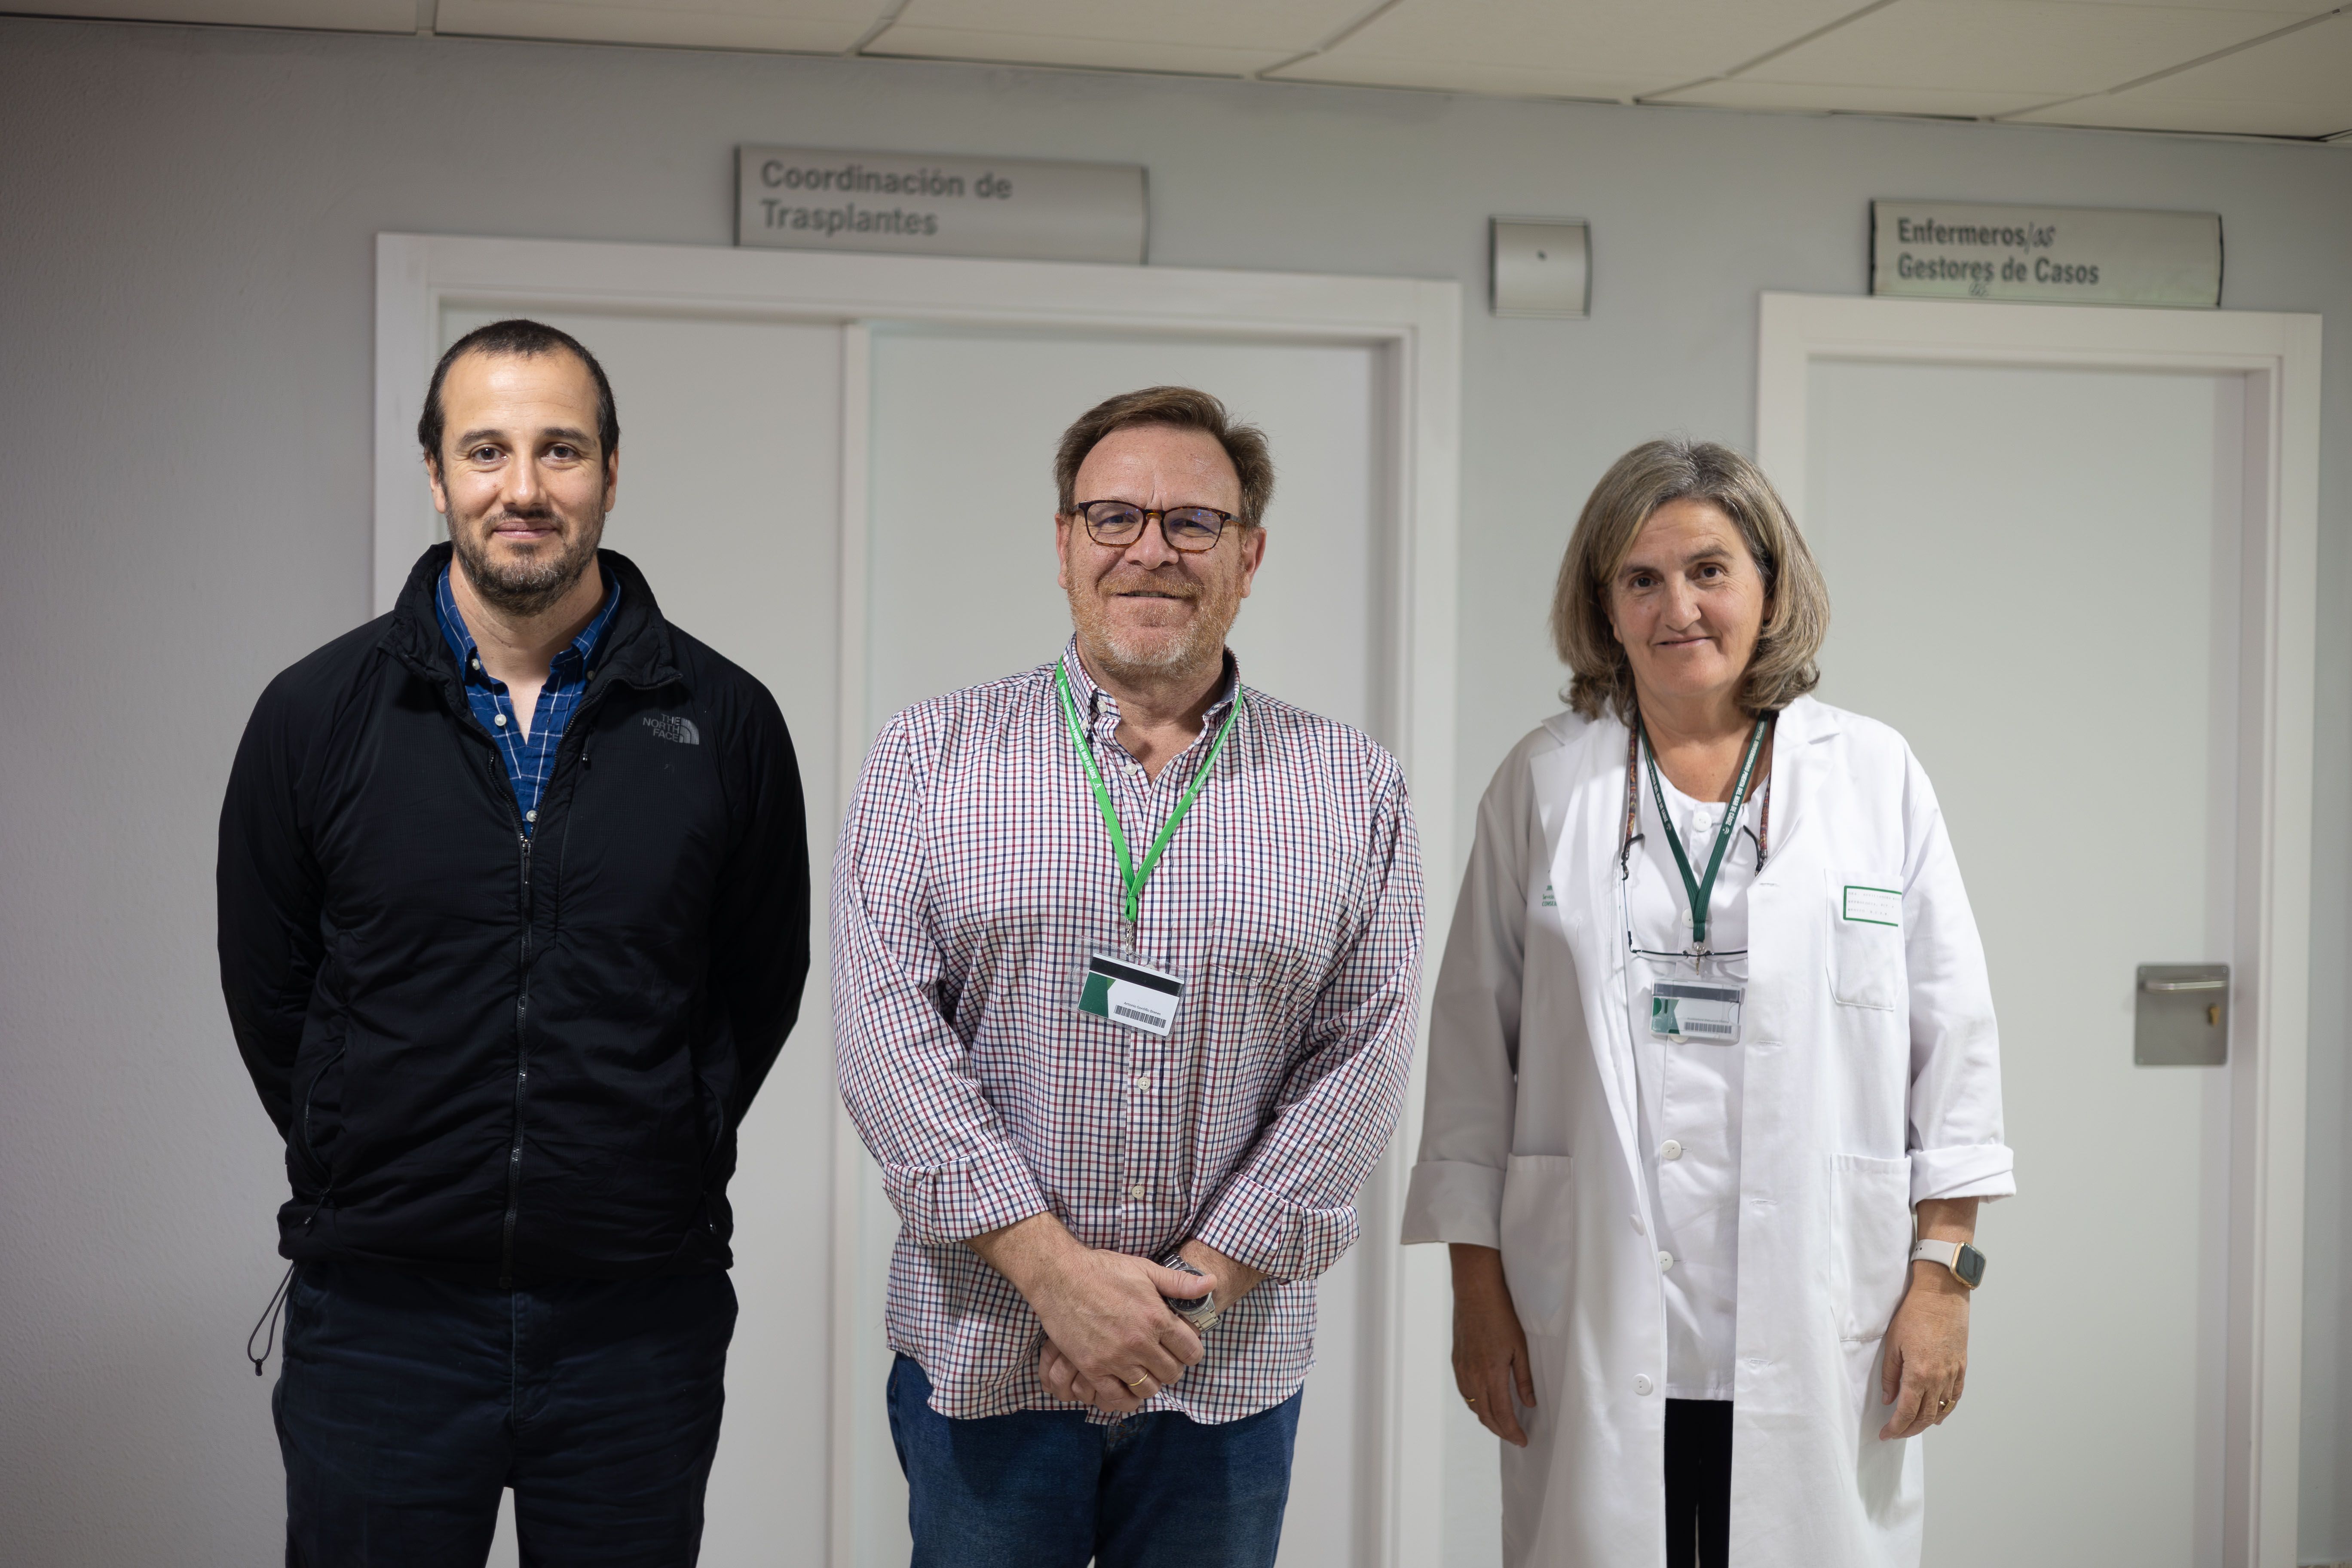 Los doctores Andrés Bujes (intensivista en estancia), Antonio Gordillo (coordinador de trasplantes) y Auxiliadora Mazuecos (jefa de Nefrología), en el hospital Puerta del Mar.